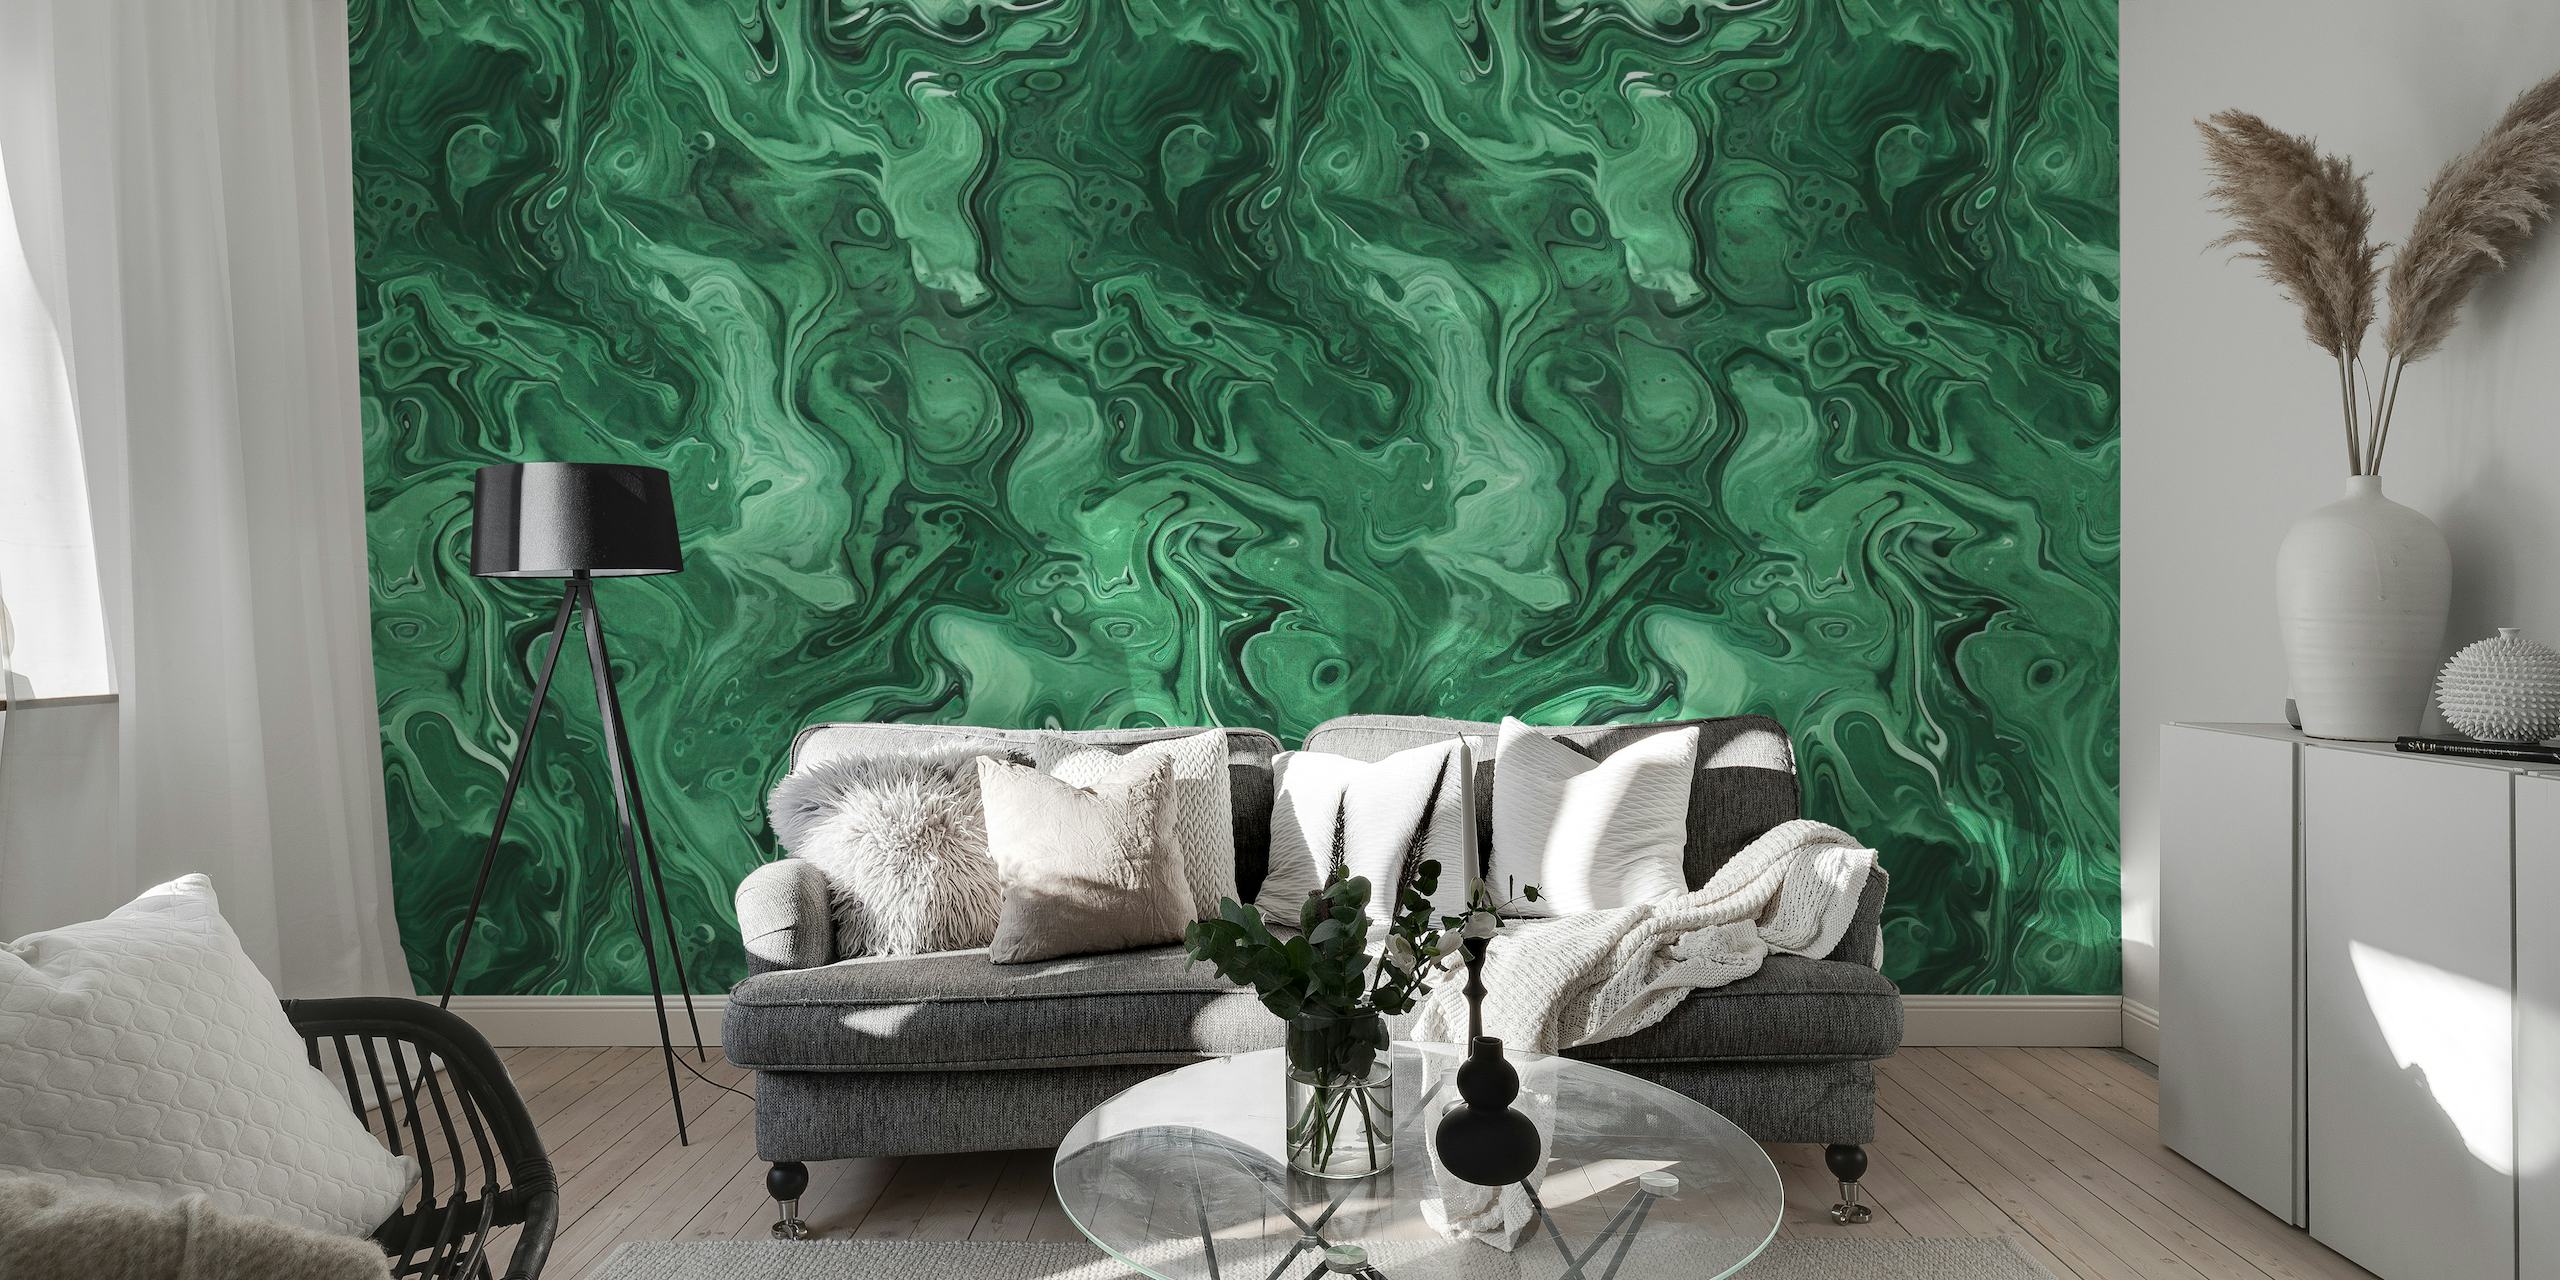 Grön Malakit Gem Stone Akvarell tapet med virvlande jade och smaragdmönster